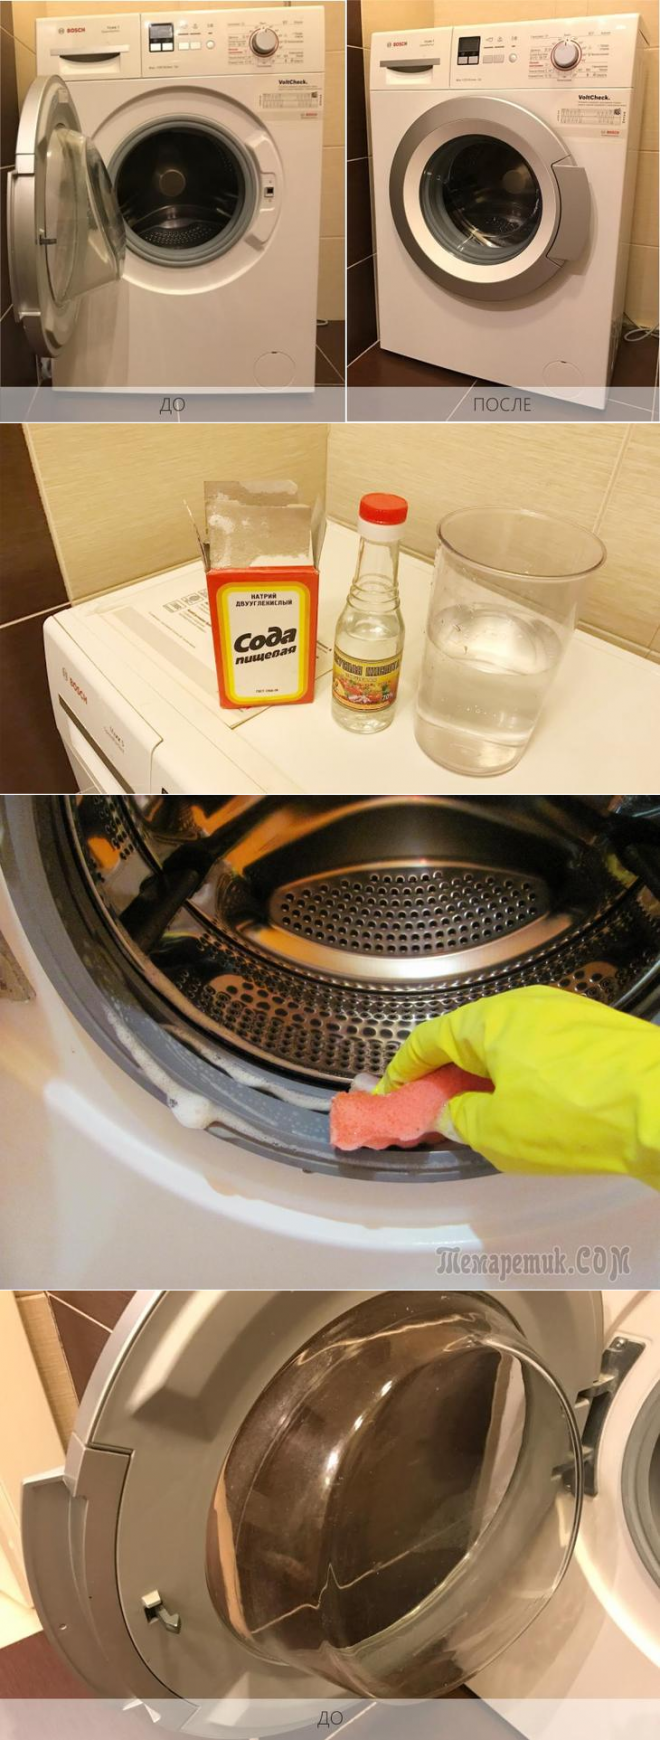 Сода для чистки стиральной машины от накипи, грязи и неприятного запаха, отзывы